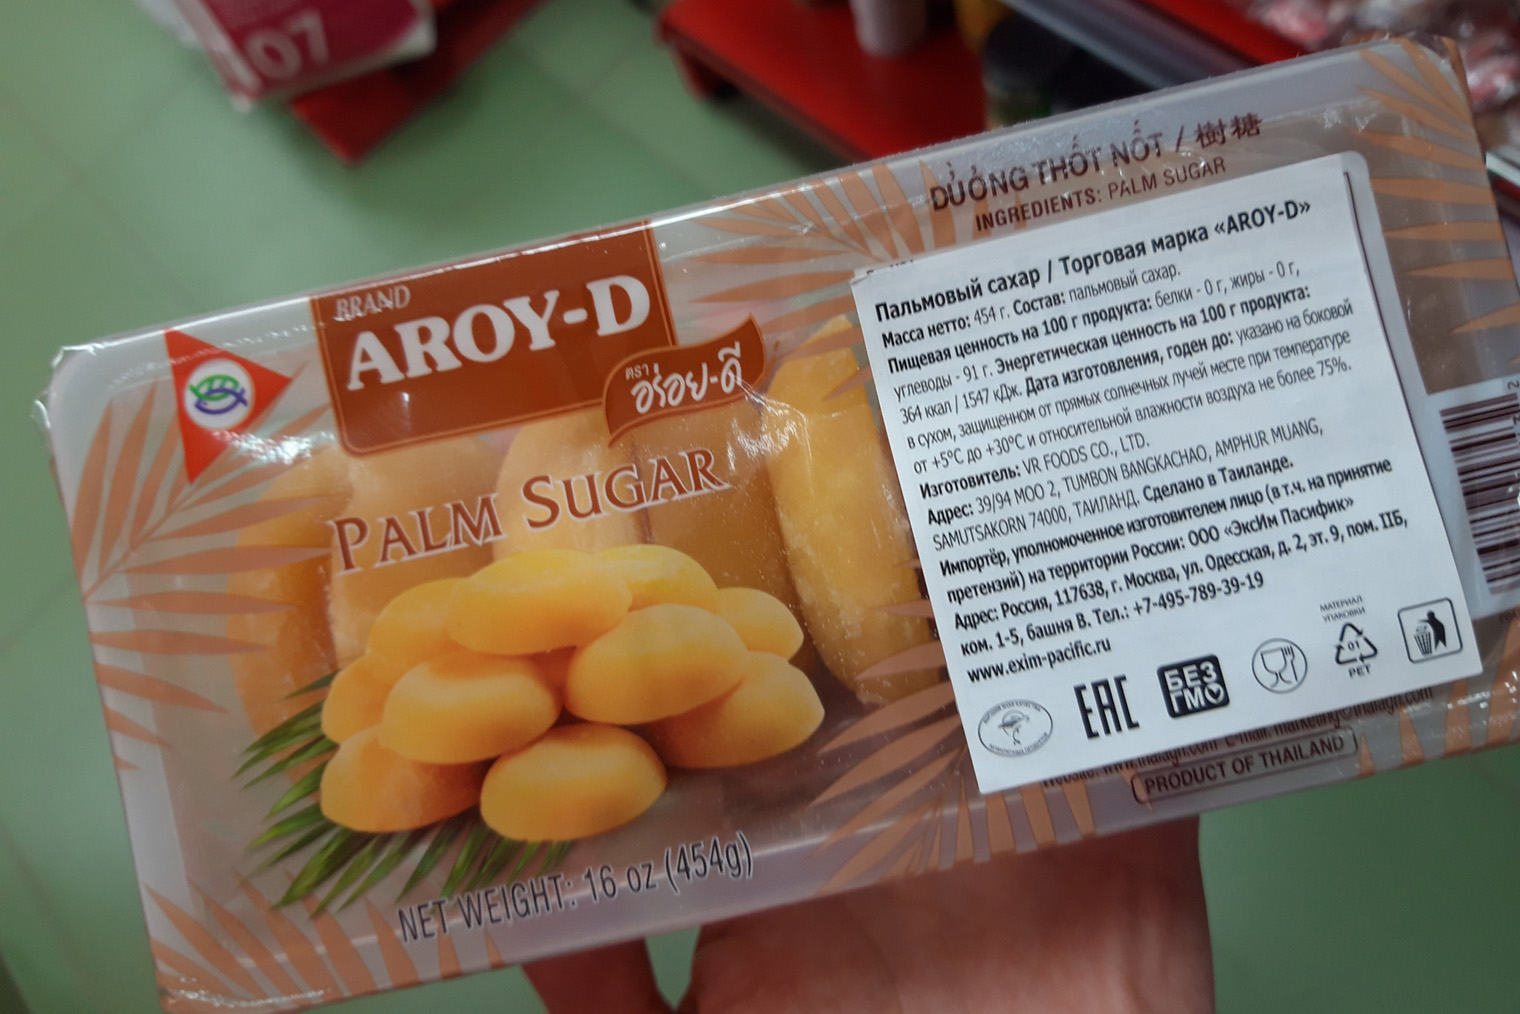 Пальмовый сахар не рассыпчатый, он продается в таких лепешках